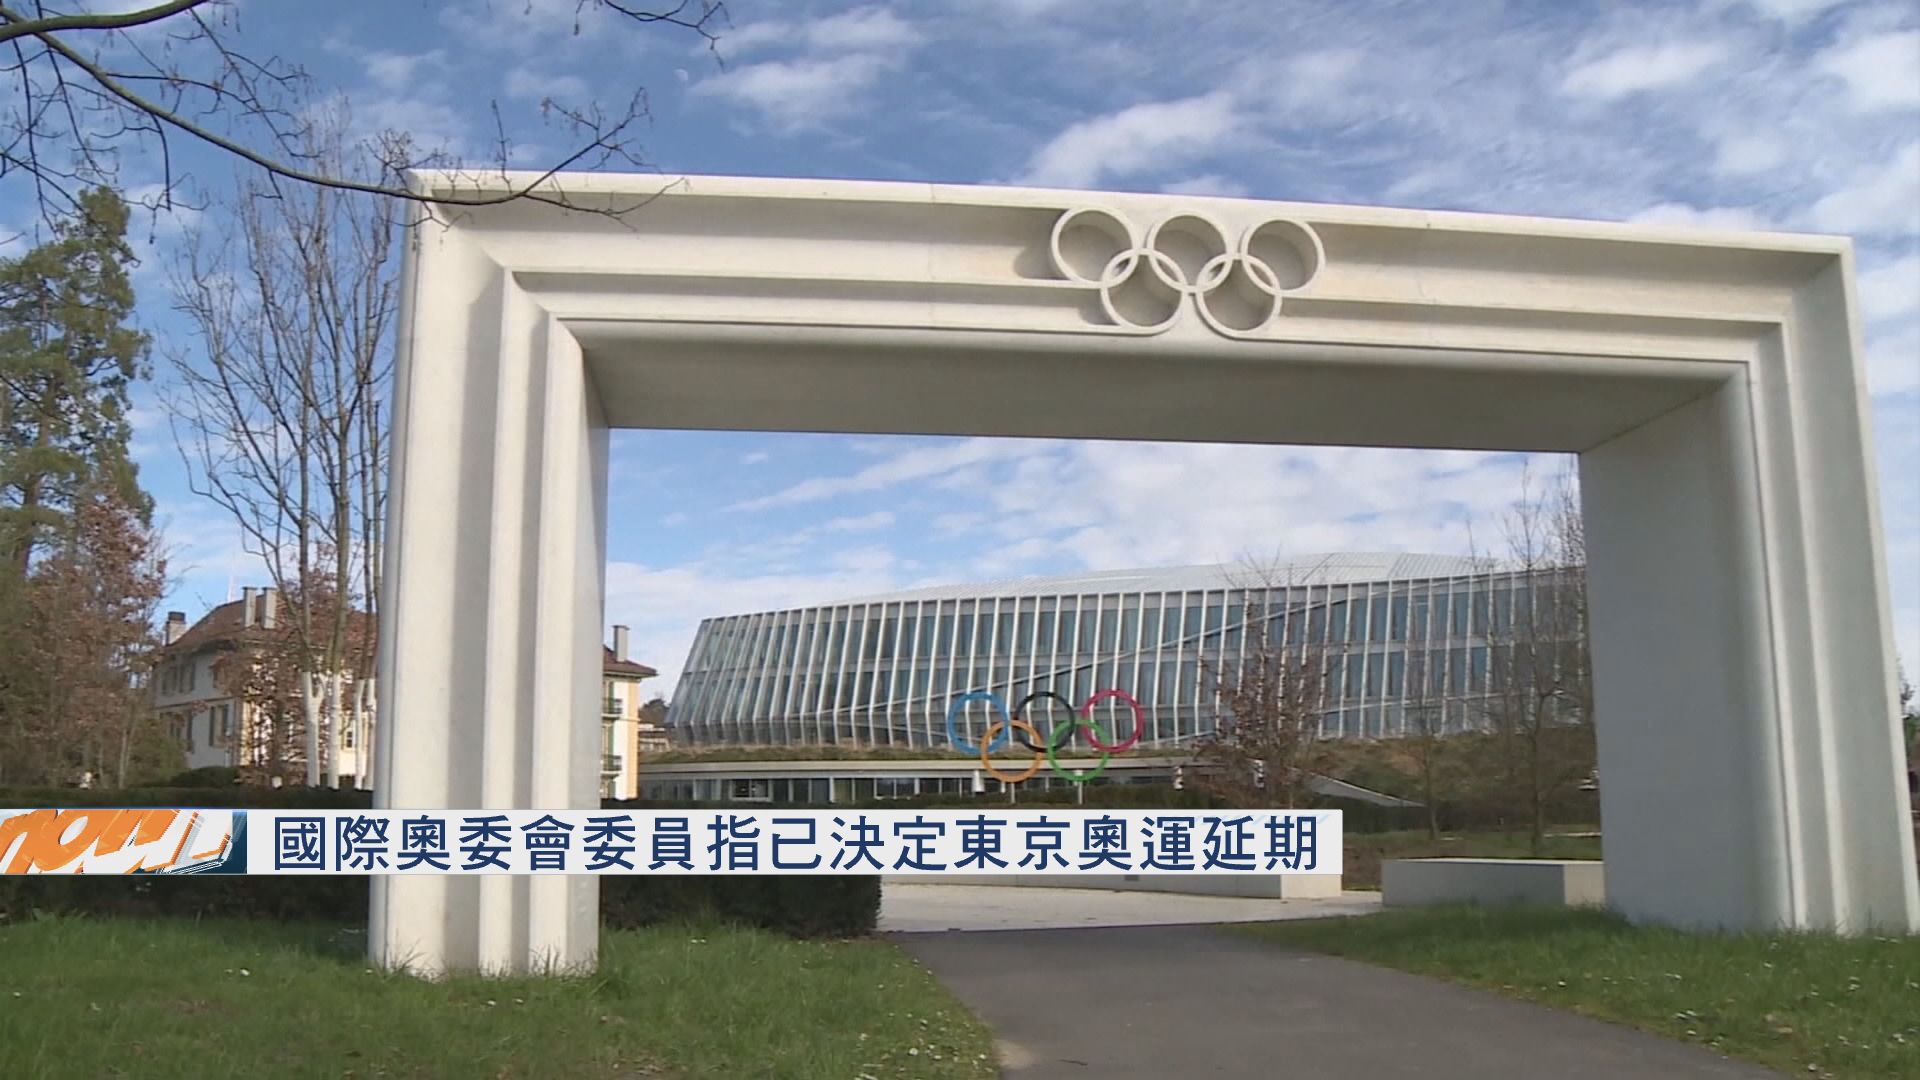 國際奧委會委員指已決定東京奧運延期